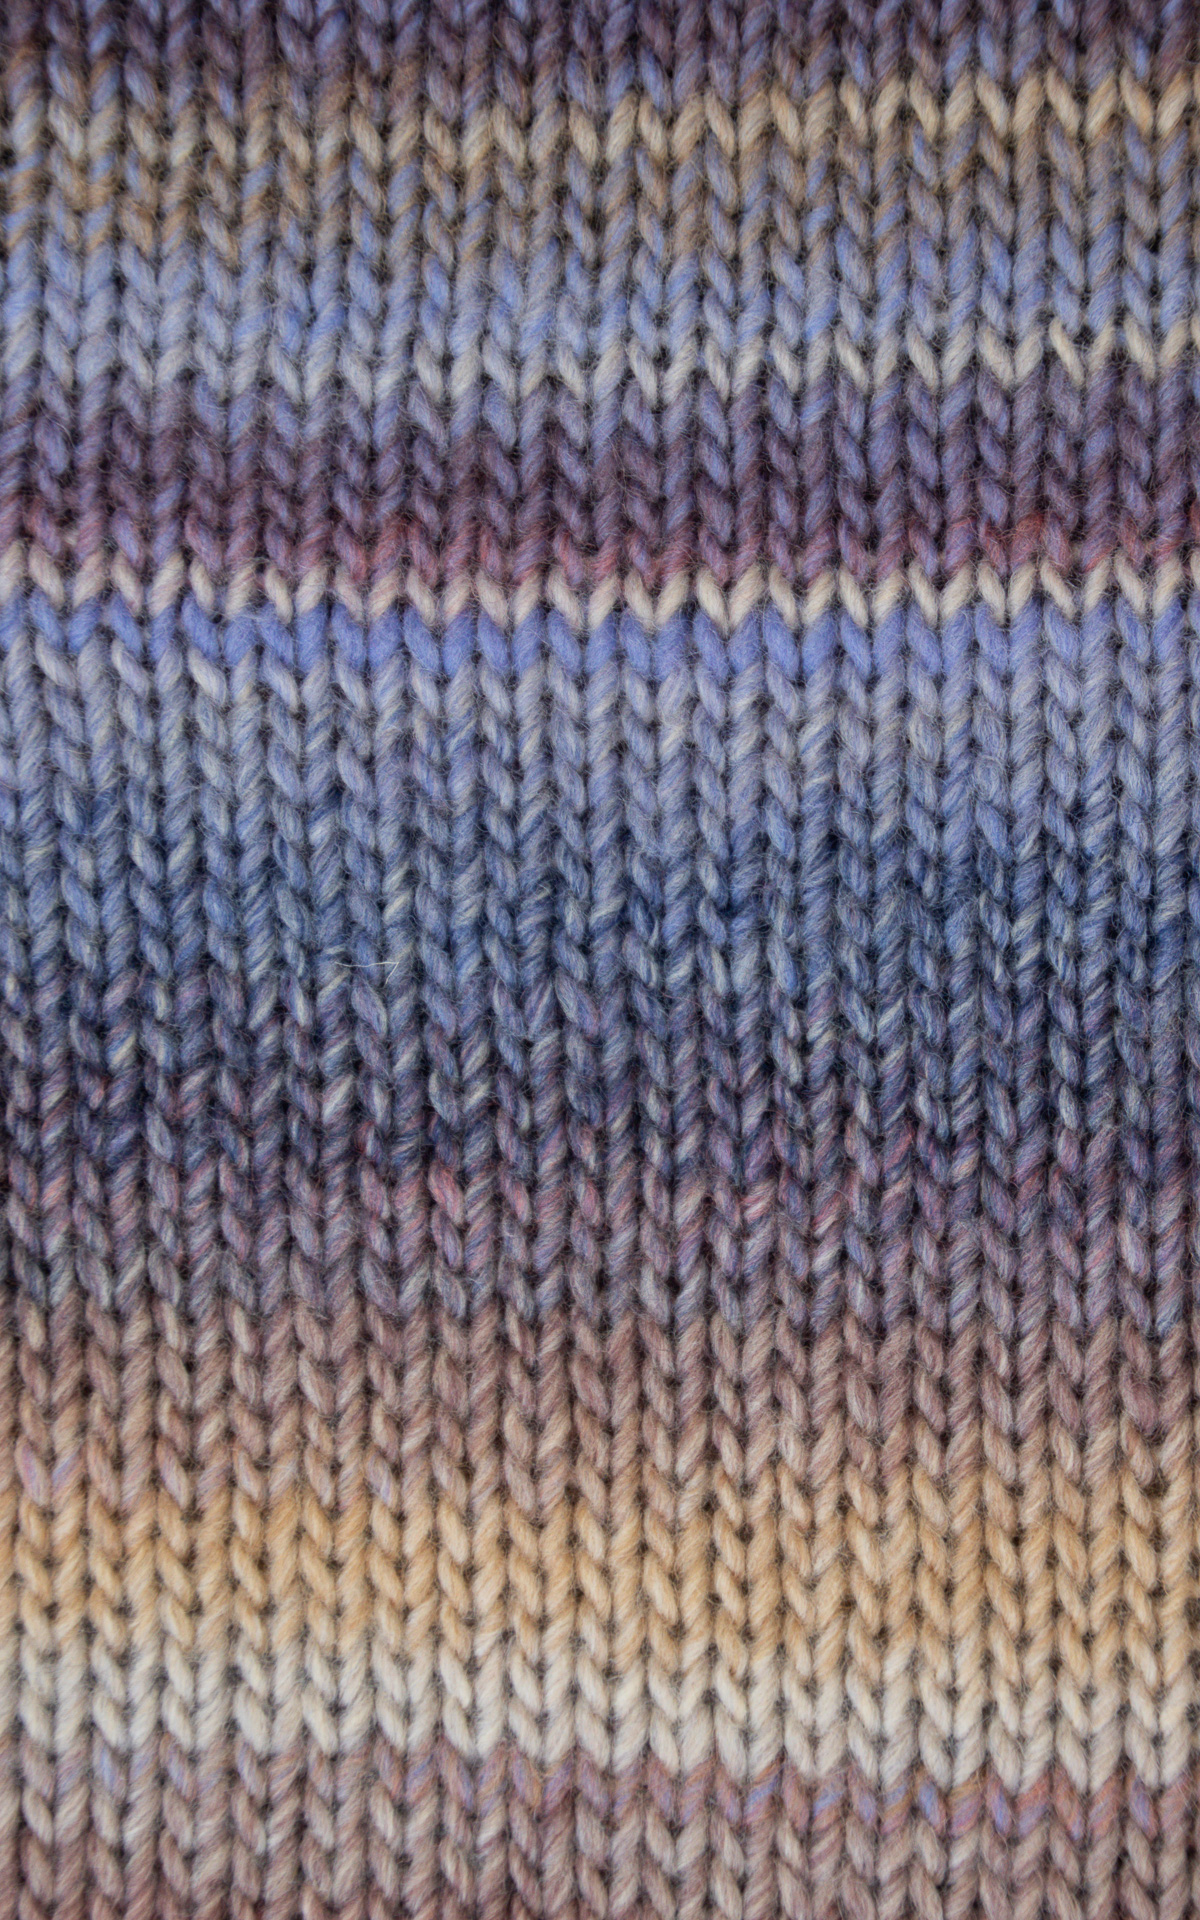 Off-On - maglia bicolore scollo V - glicine